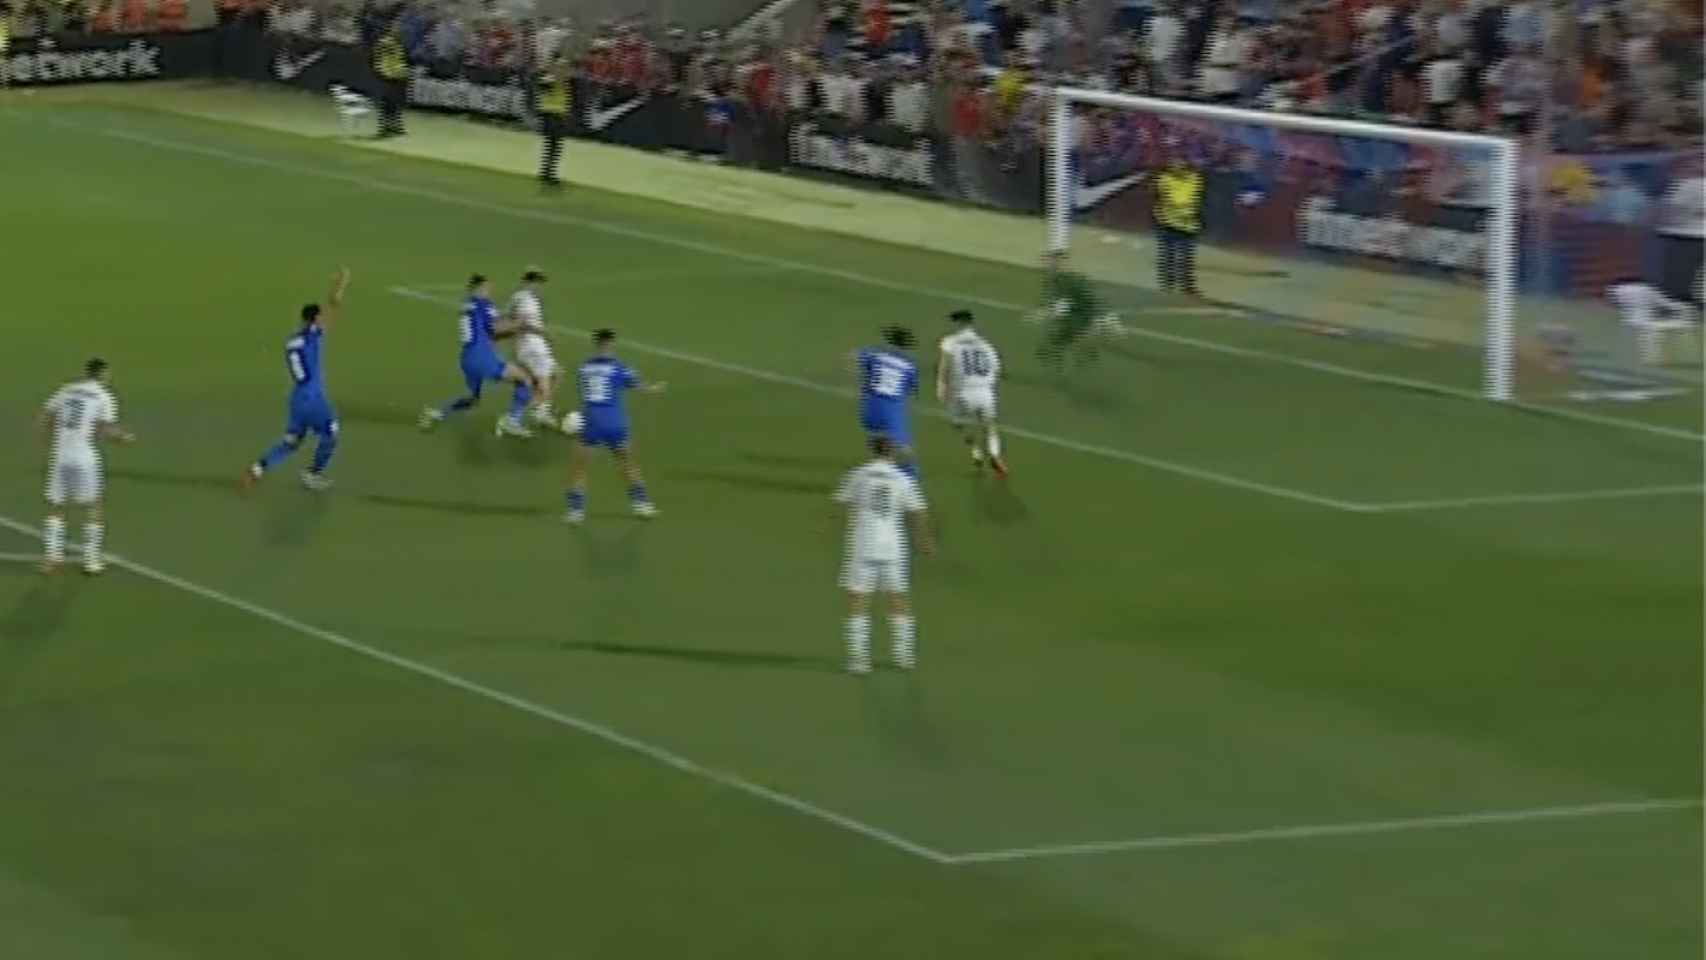 El Castilla reclamó penalti en el último minuto del partido ante el Eldense